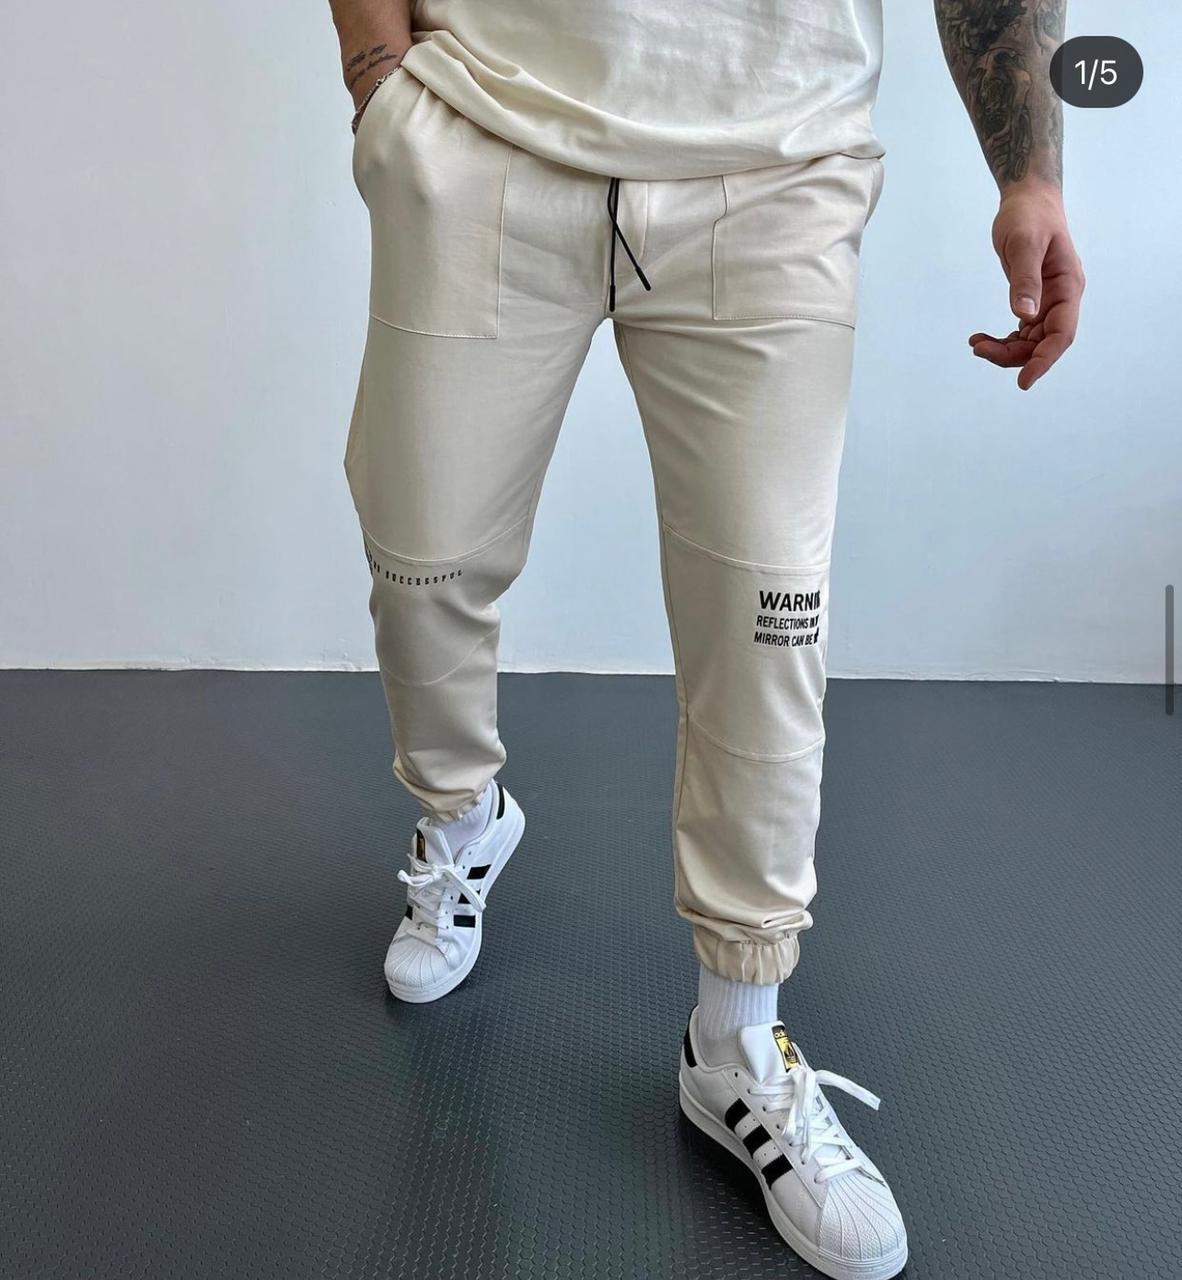 Спортивные штаны мужские | INTERTOP | Купить спортивные брюки мужские по выгодной цене в Казахстане